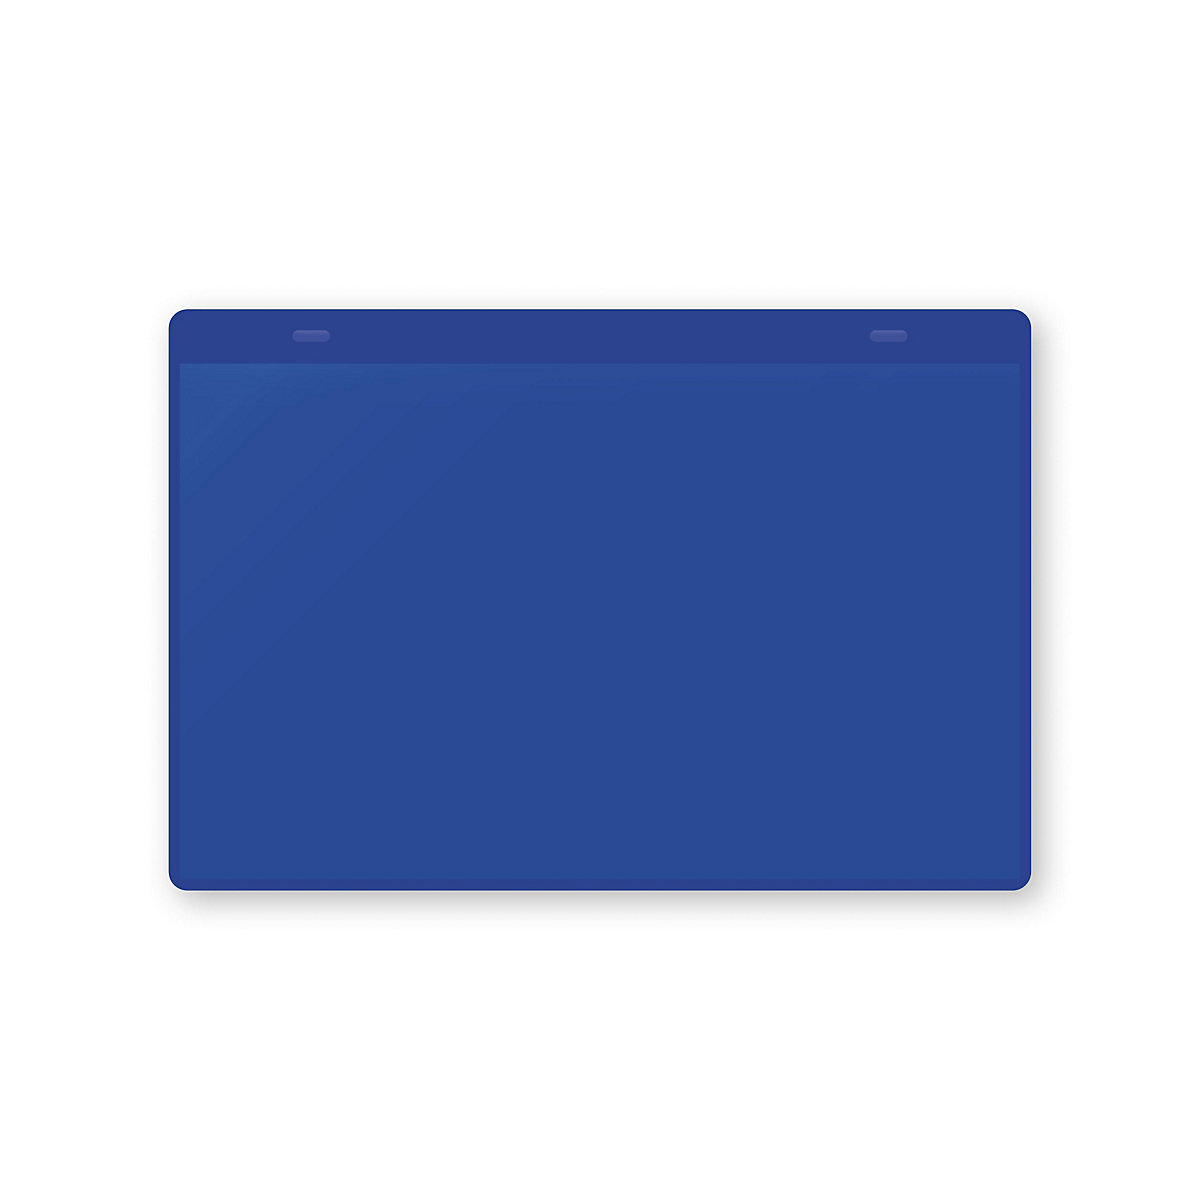 Öntapadó dokumentumtartó tasakok, DIN A5, fekvő, cs. e. 50 db, kék